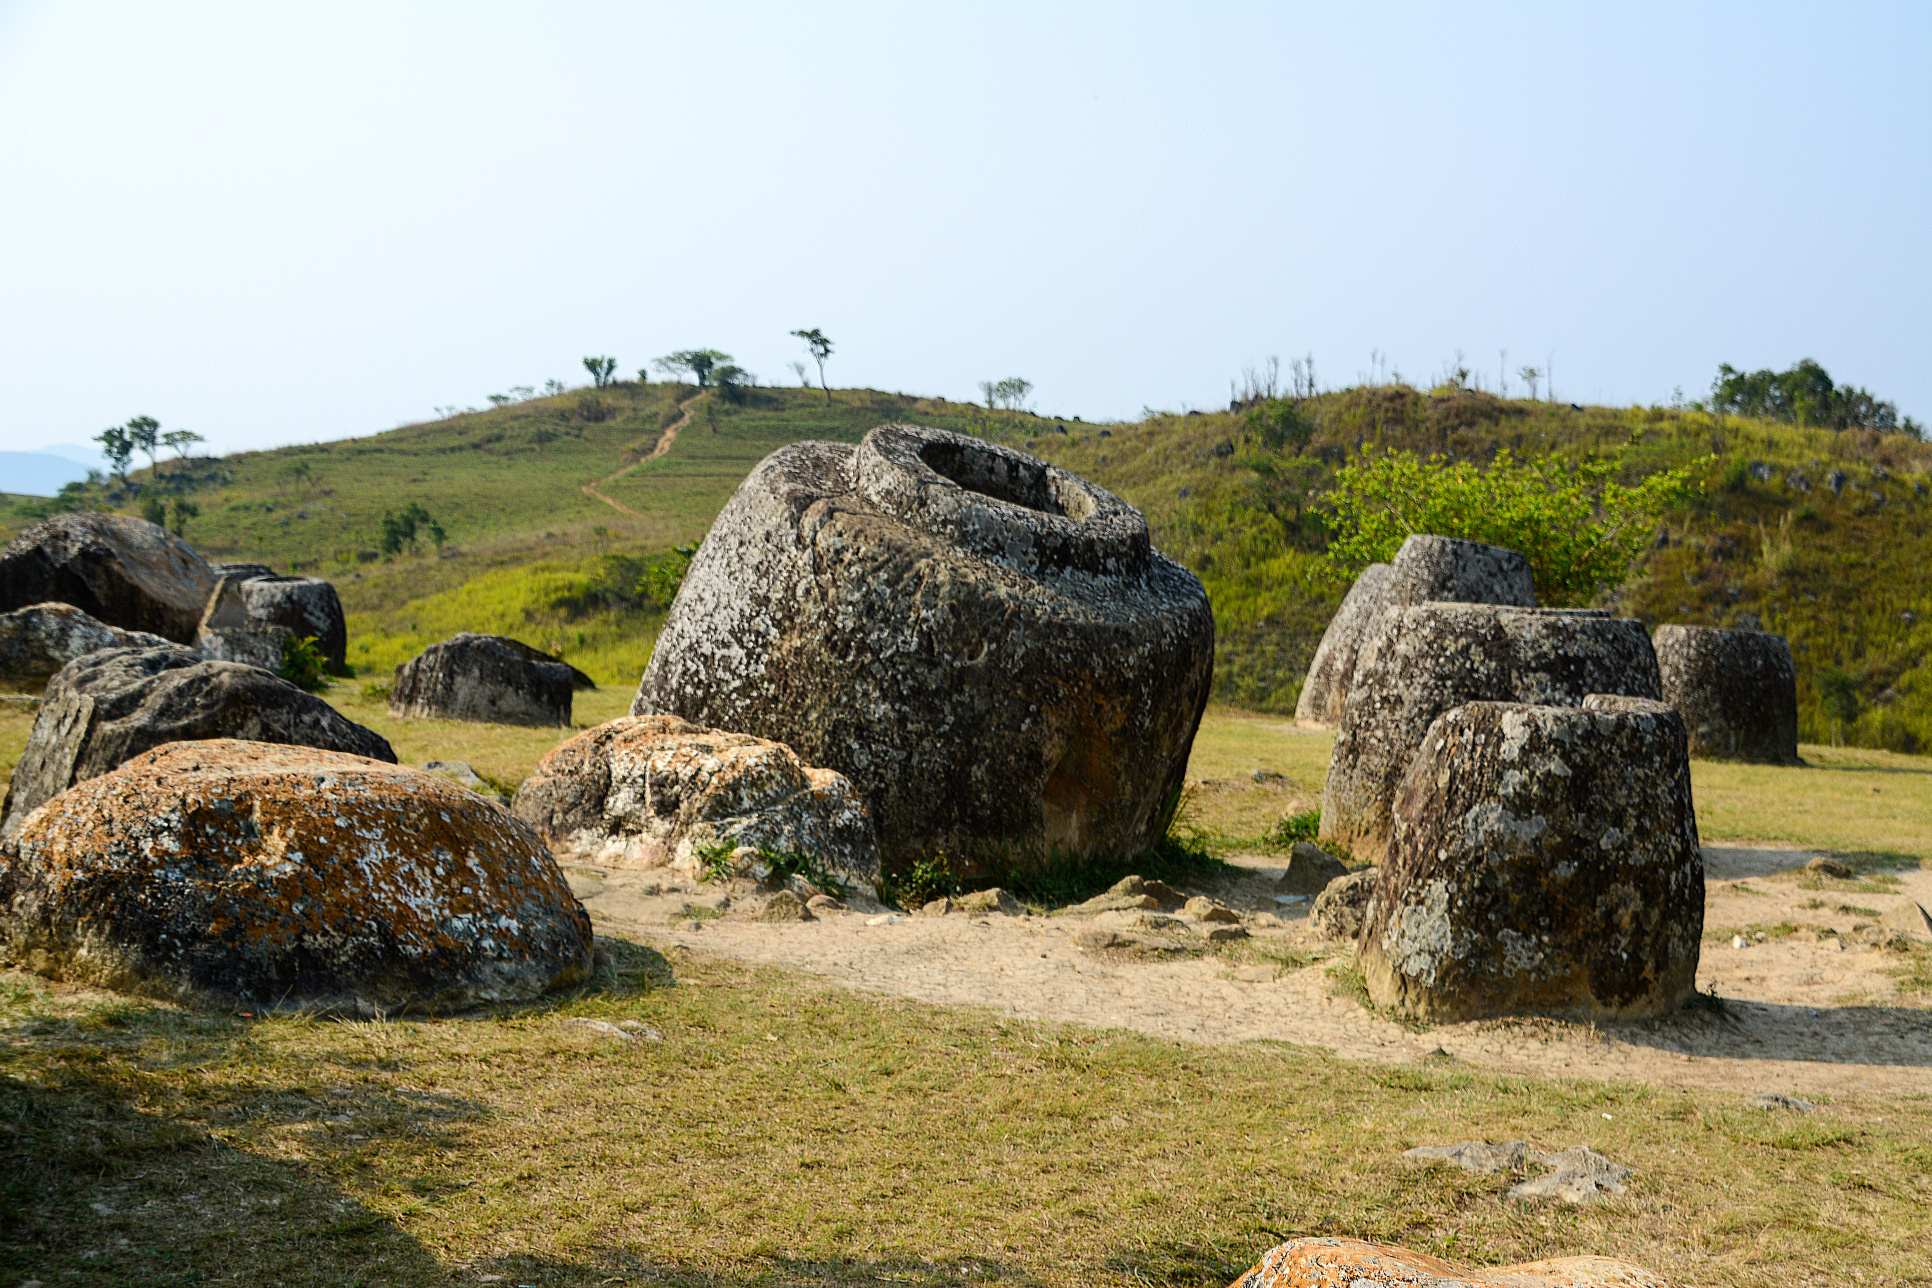 A Plain of Jars egy régészeti lelőhely Laoszban, amely több ezer hatalmas kőedényből áll